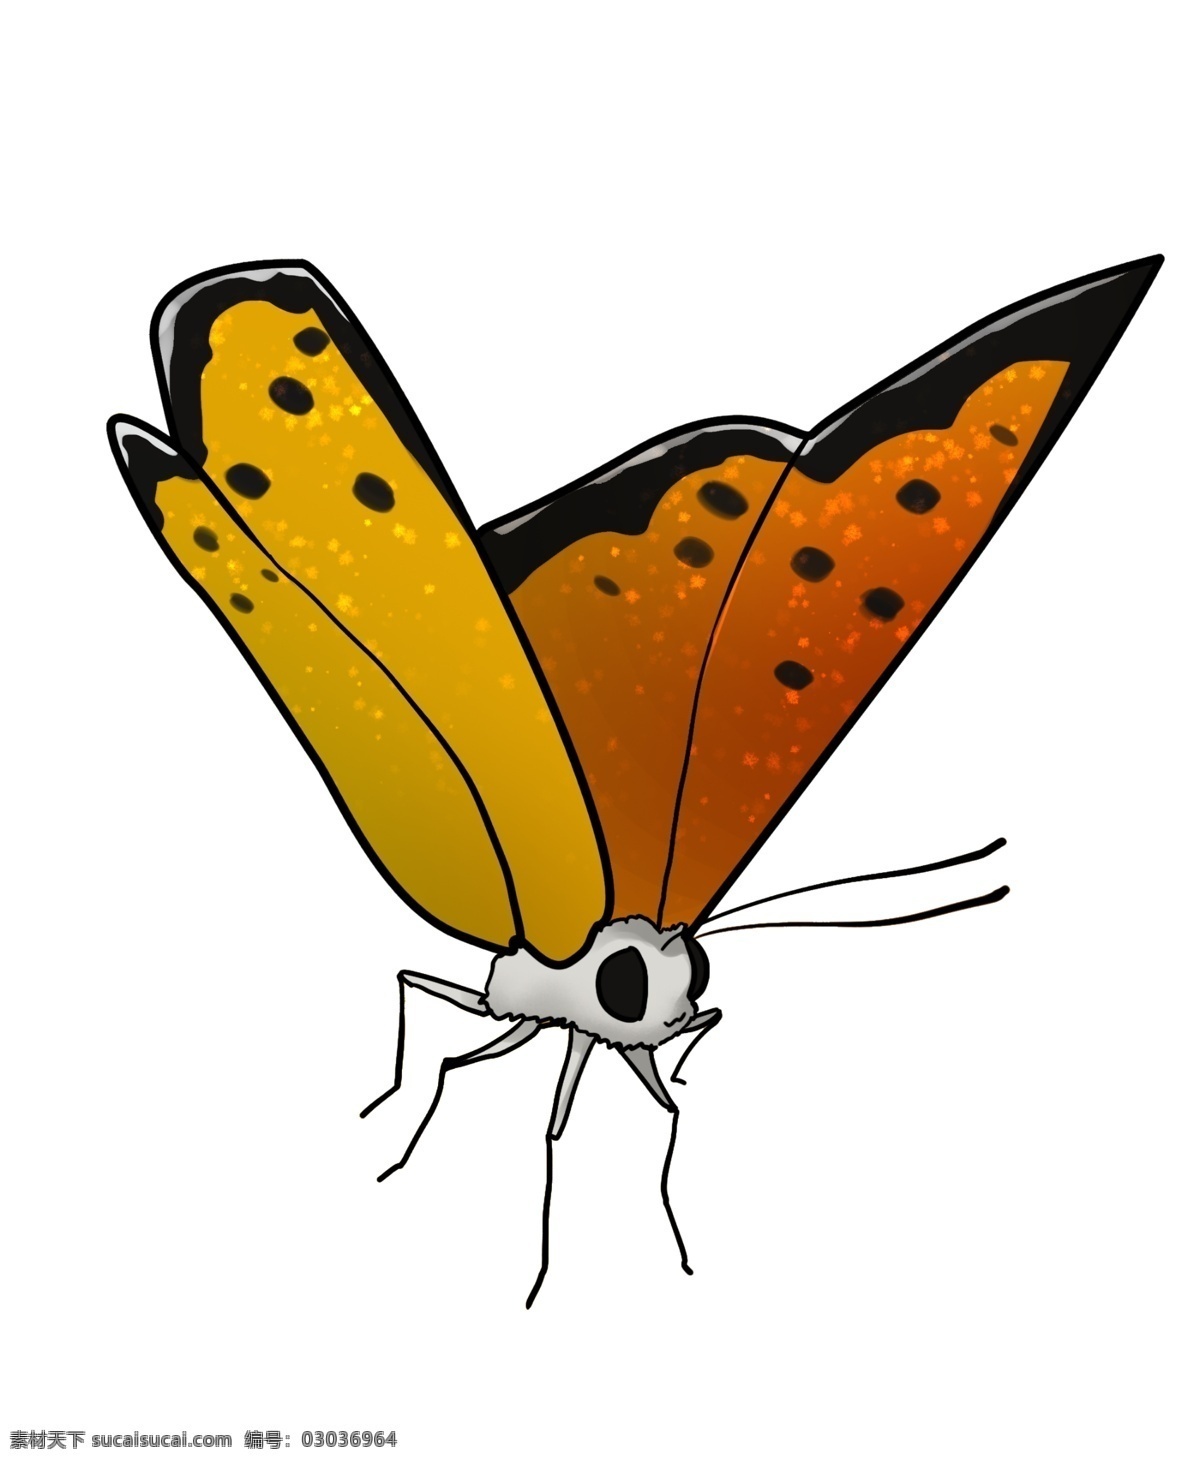 好看 蝴蝶 卡通 插画 好看的蝴蝶 卡通插画 动物插画 蝴蝶插画 动物蝴蝶 昆虫 益虫 漂亮的蝴蝶